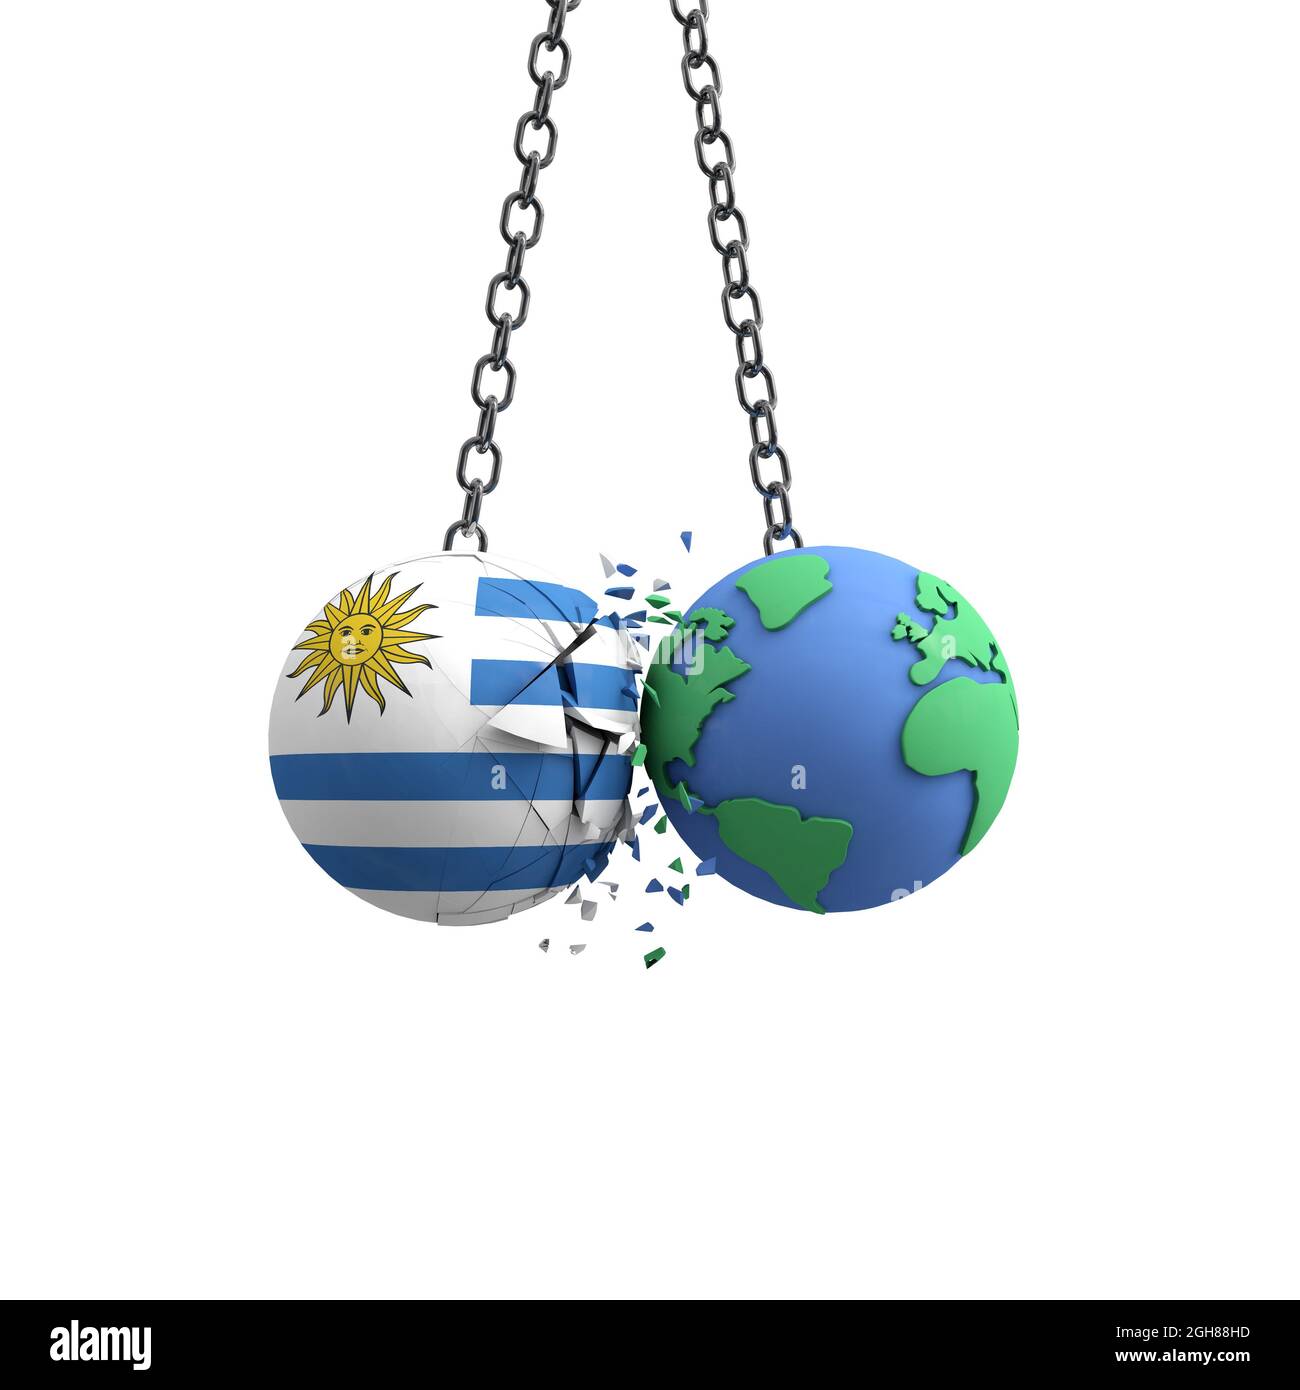 Le drapeau de l'Uruguay frappe la planète terre. Concept d'impact sur l'environnement. Rendu 3D Banque D'Images